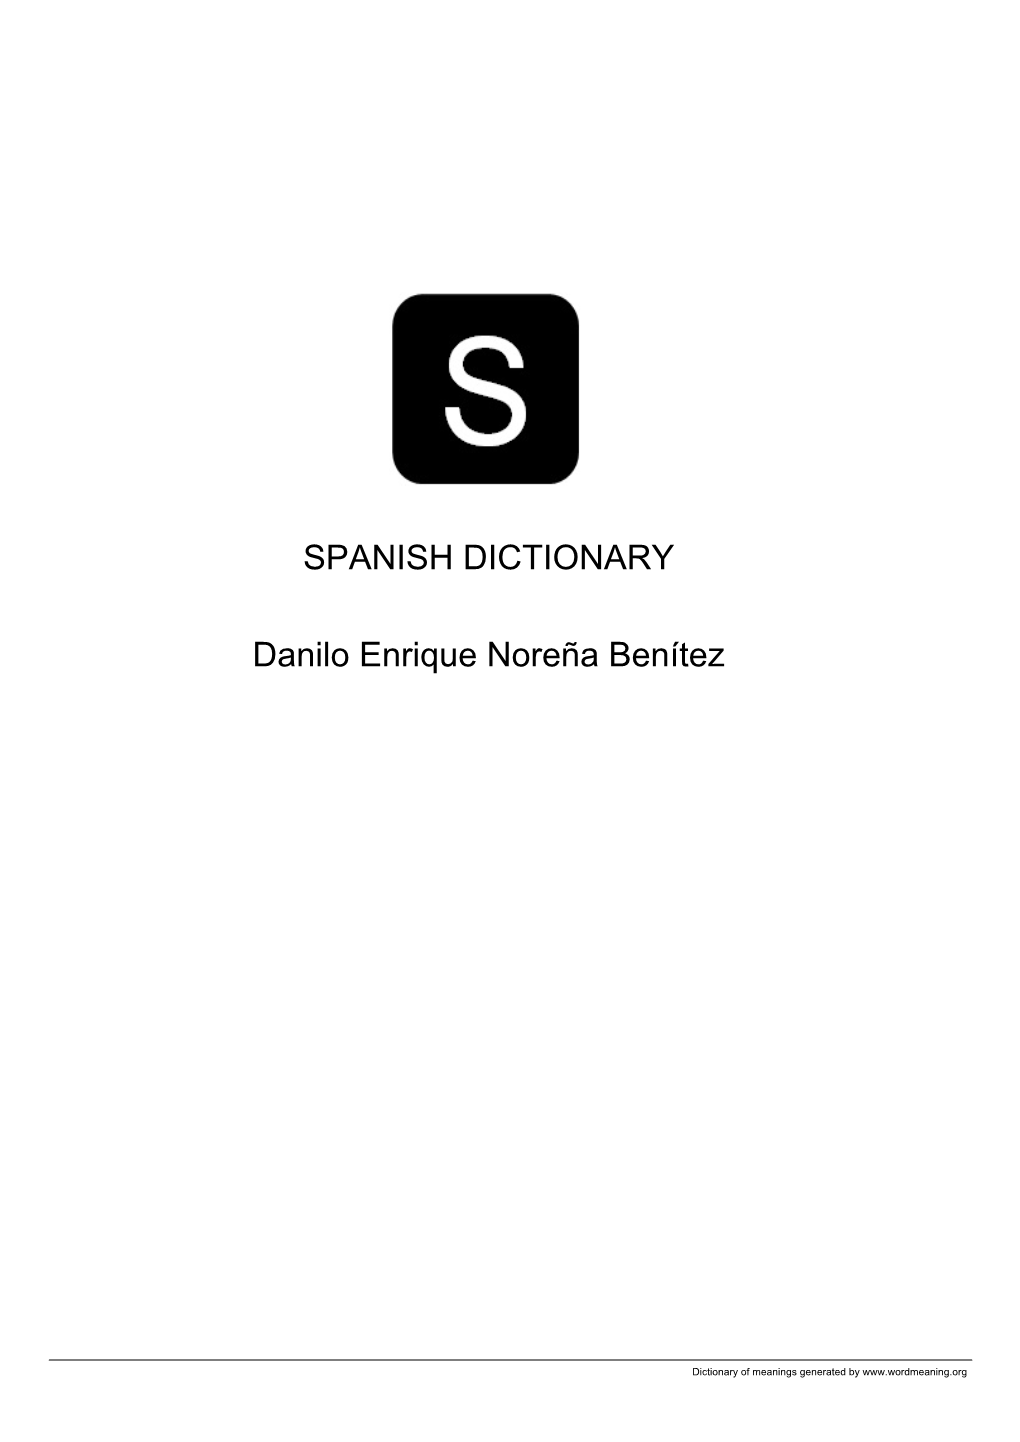 Spanish Open Dictionary by Danilo Enrique Noreña Benítez VOL5